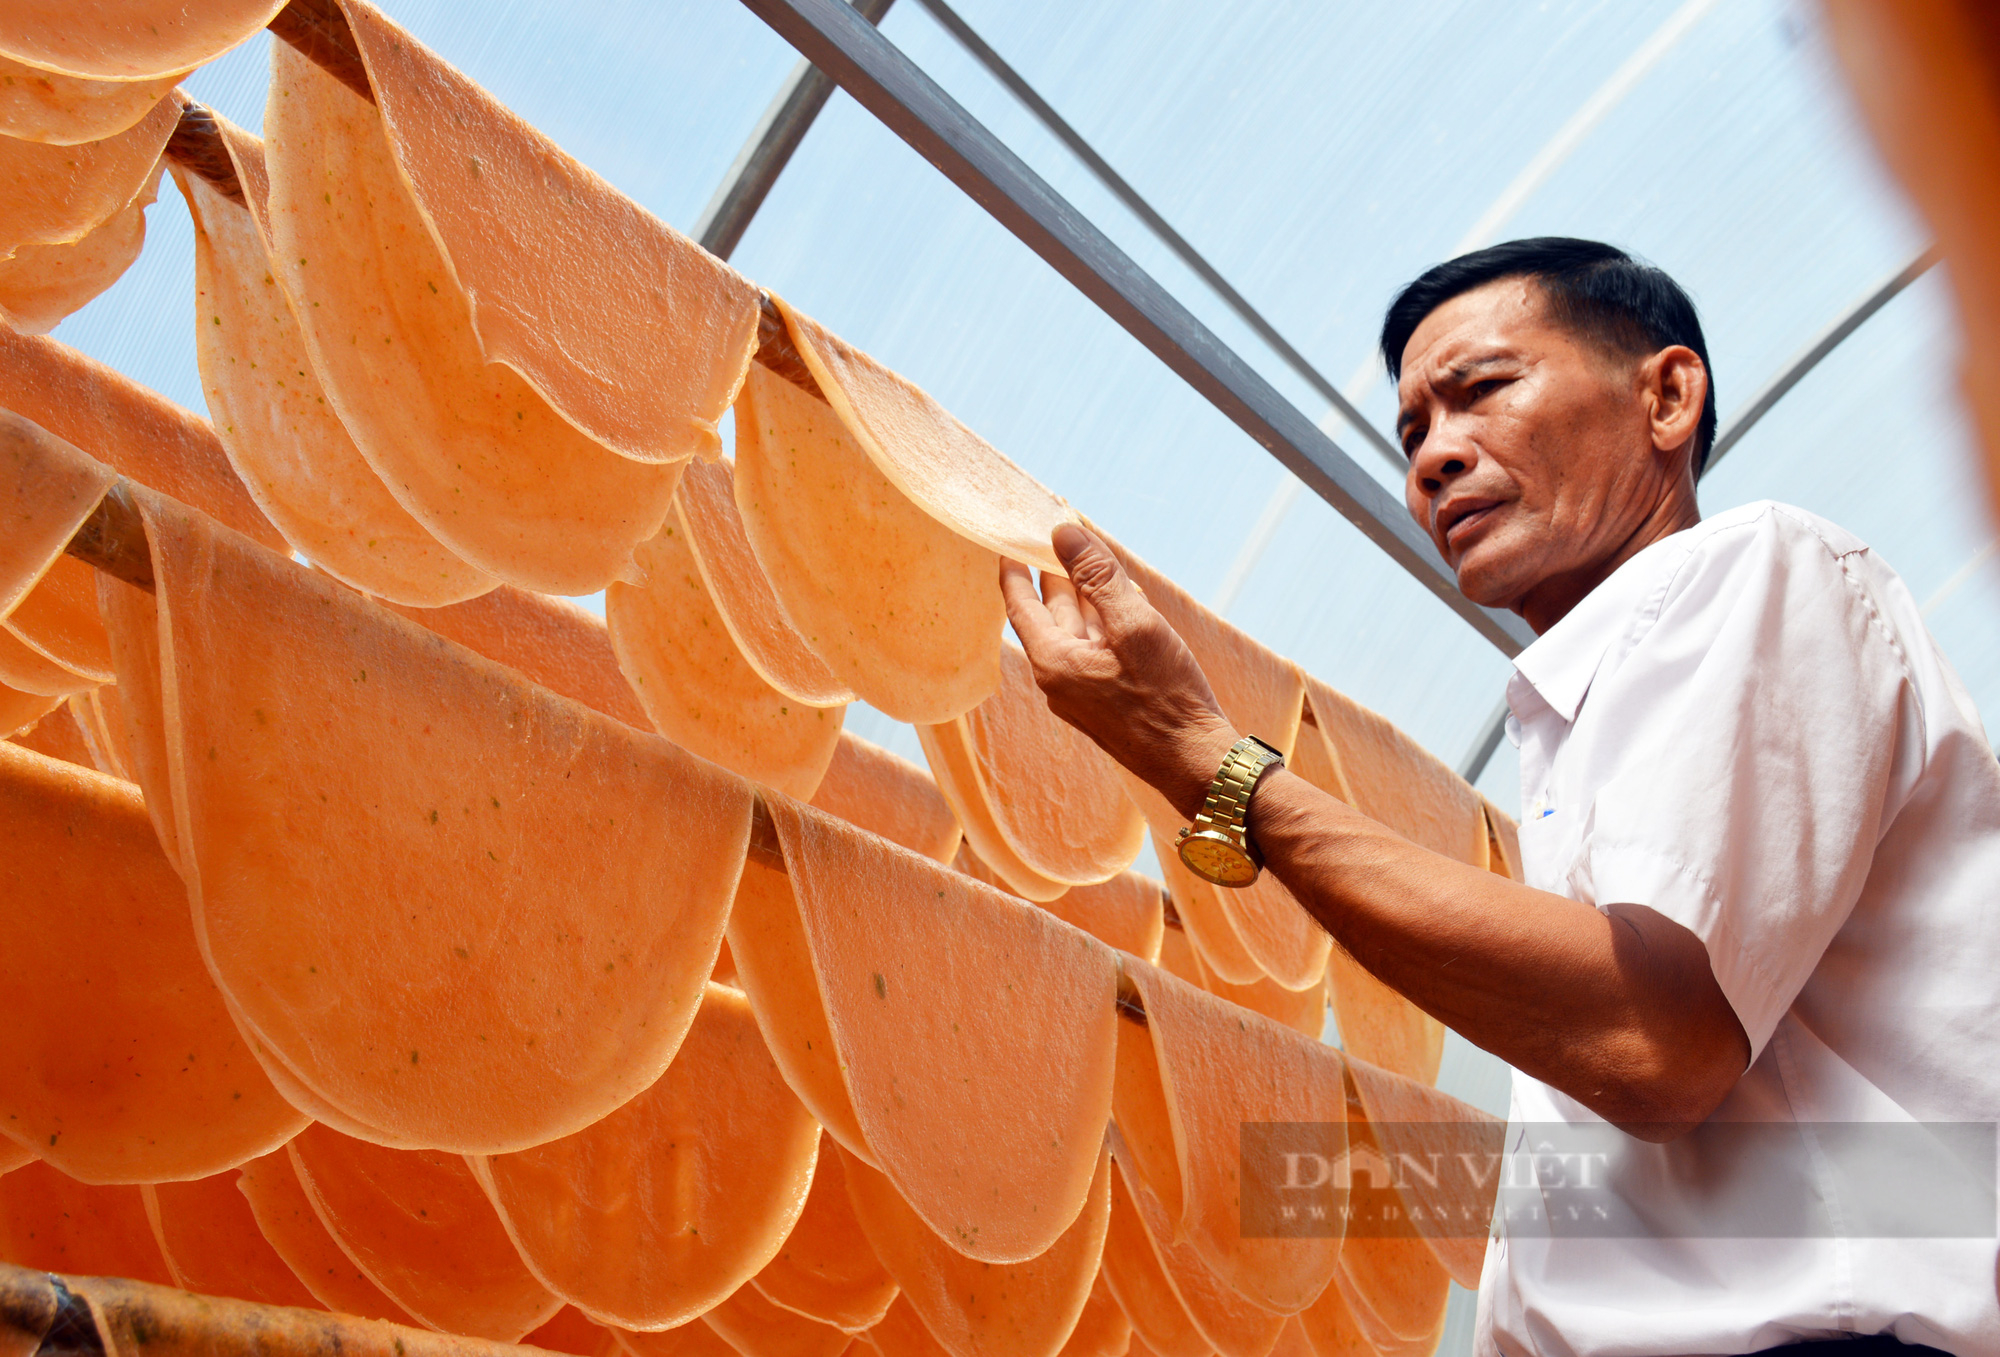 Đặc sản bánh phồng tôm Cà Mau đắt hàng dịp Tết, nông dân tất bật sản xuất - Ảnh 3.